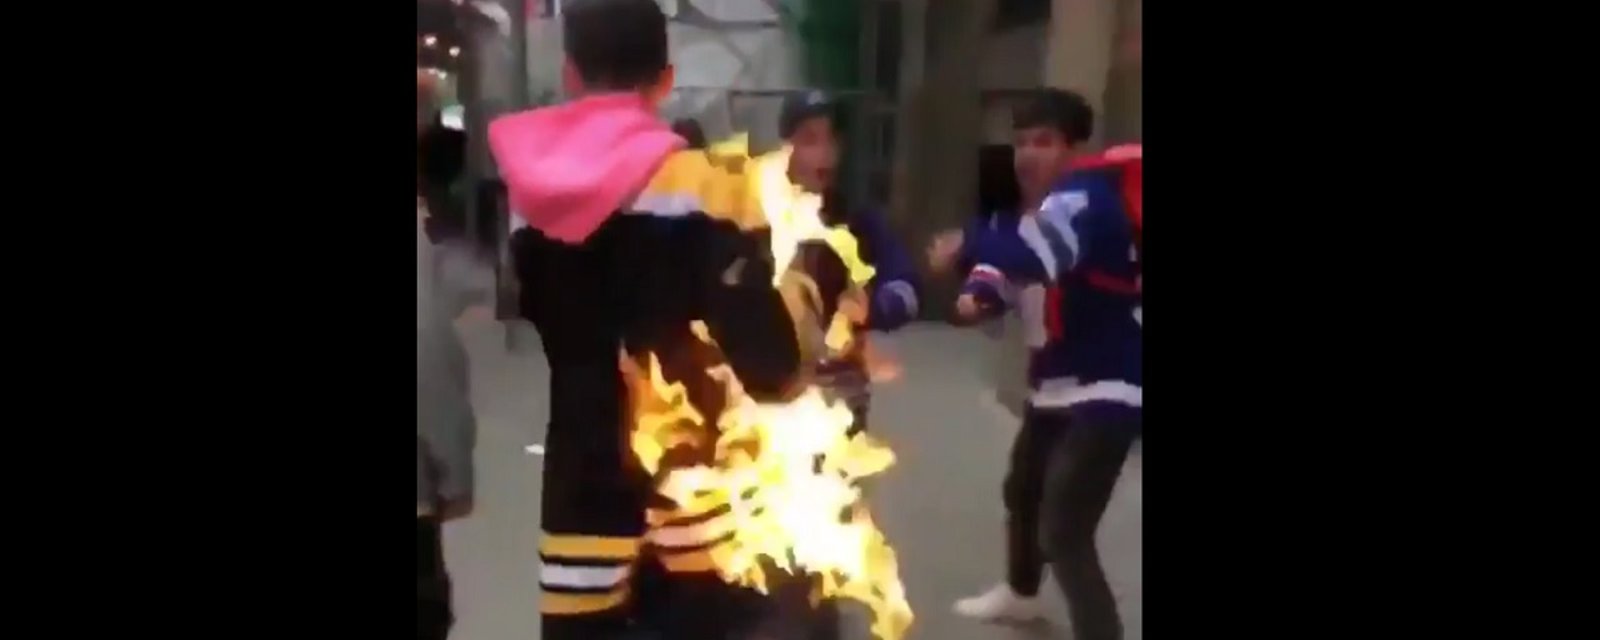 Leaf fans set Bruins fan on fire after Game 6!